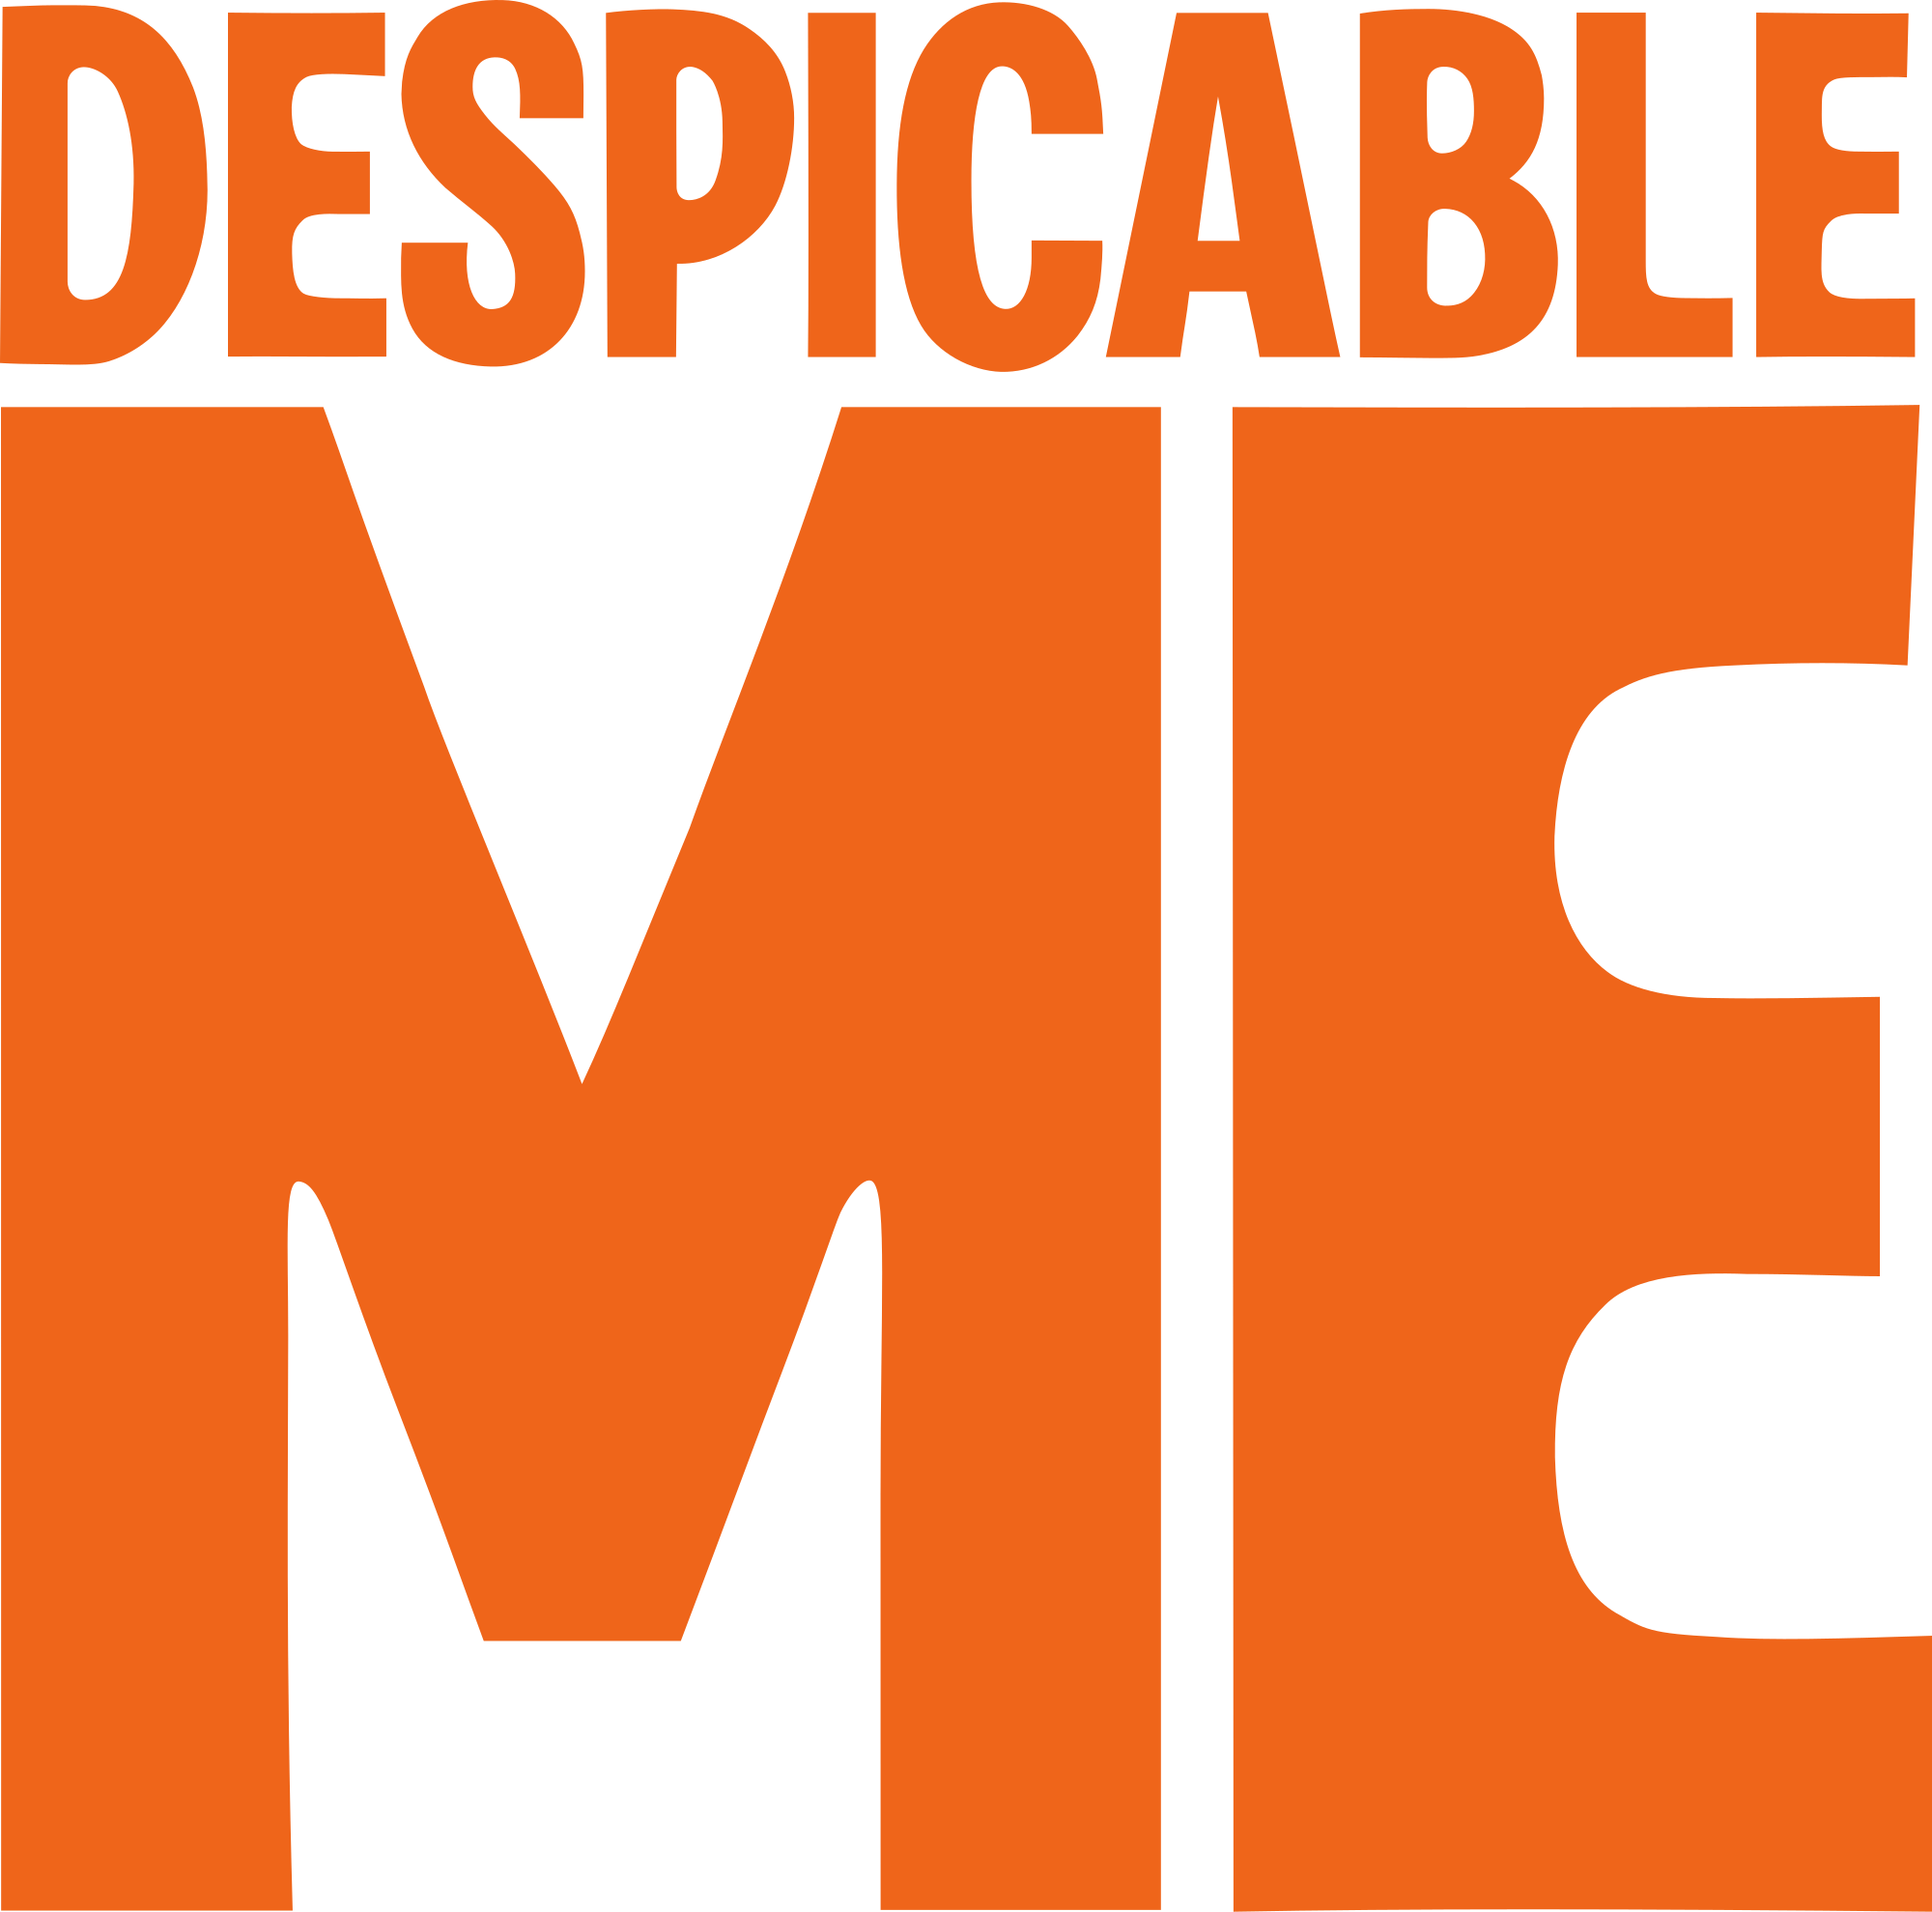 Despicable Me 1 Logo - Despicable Me (franchise)